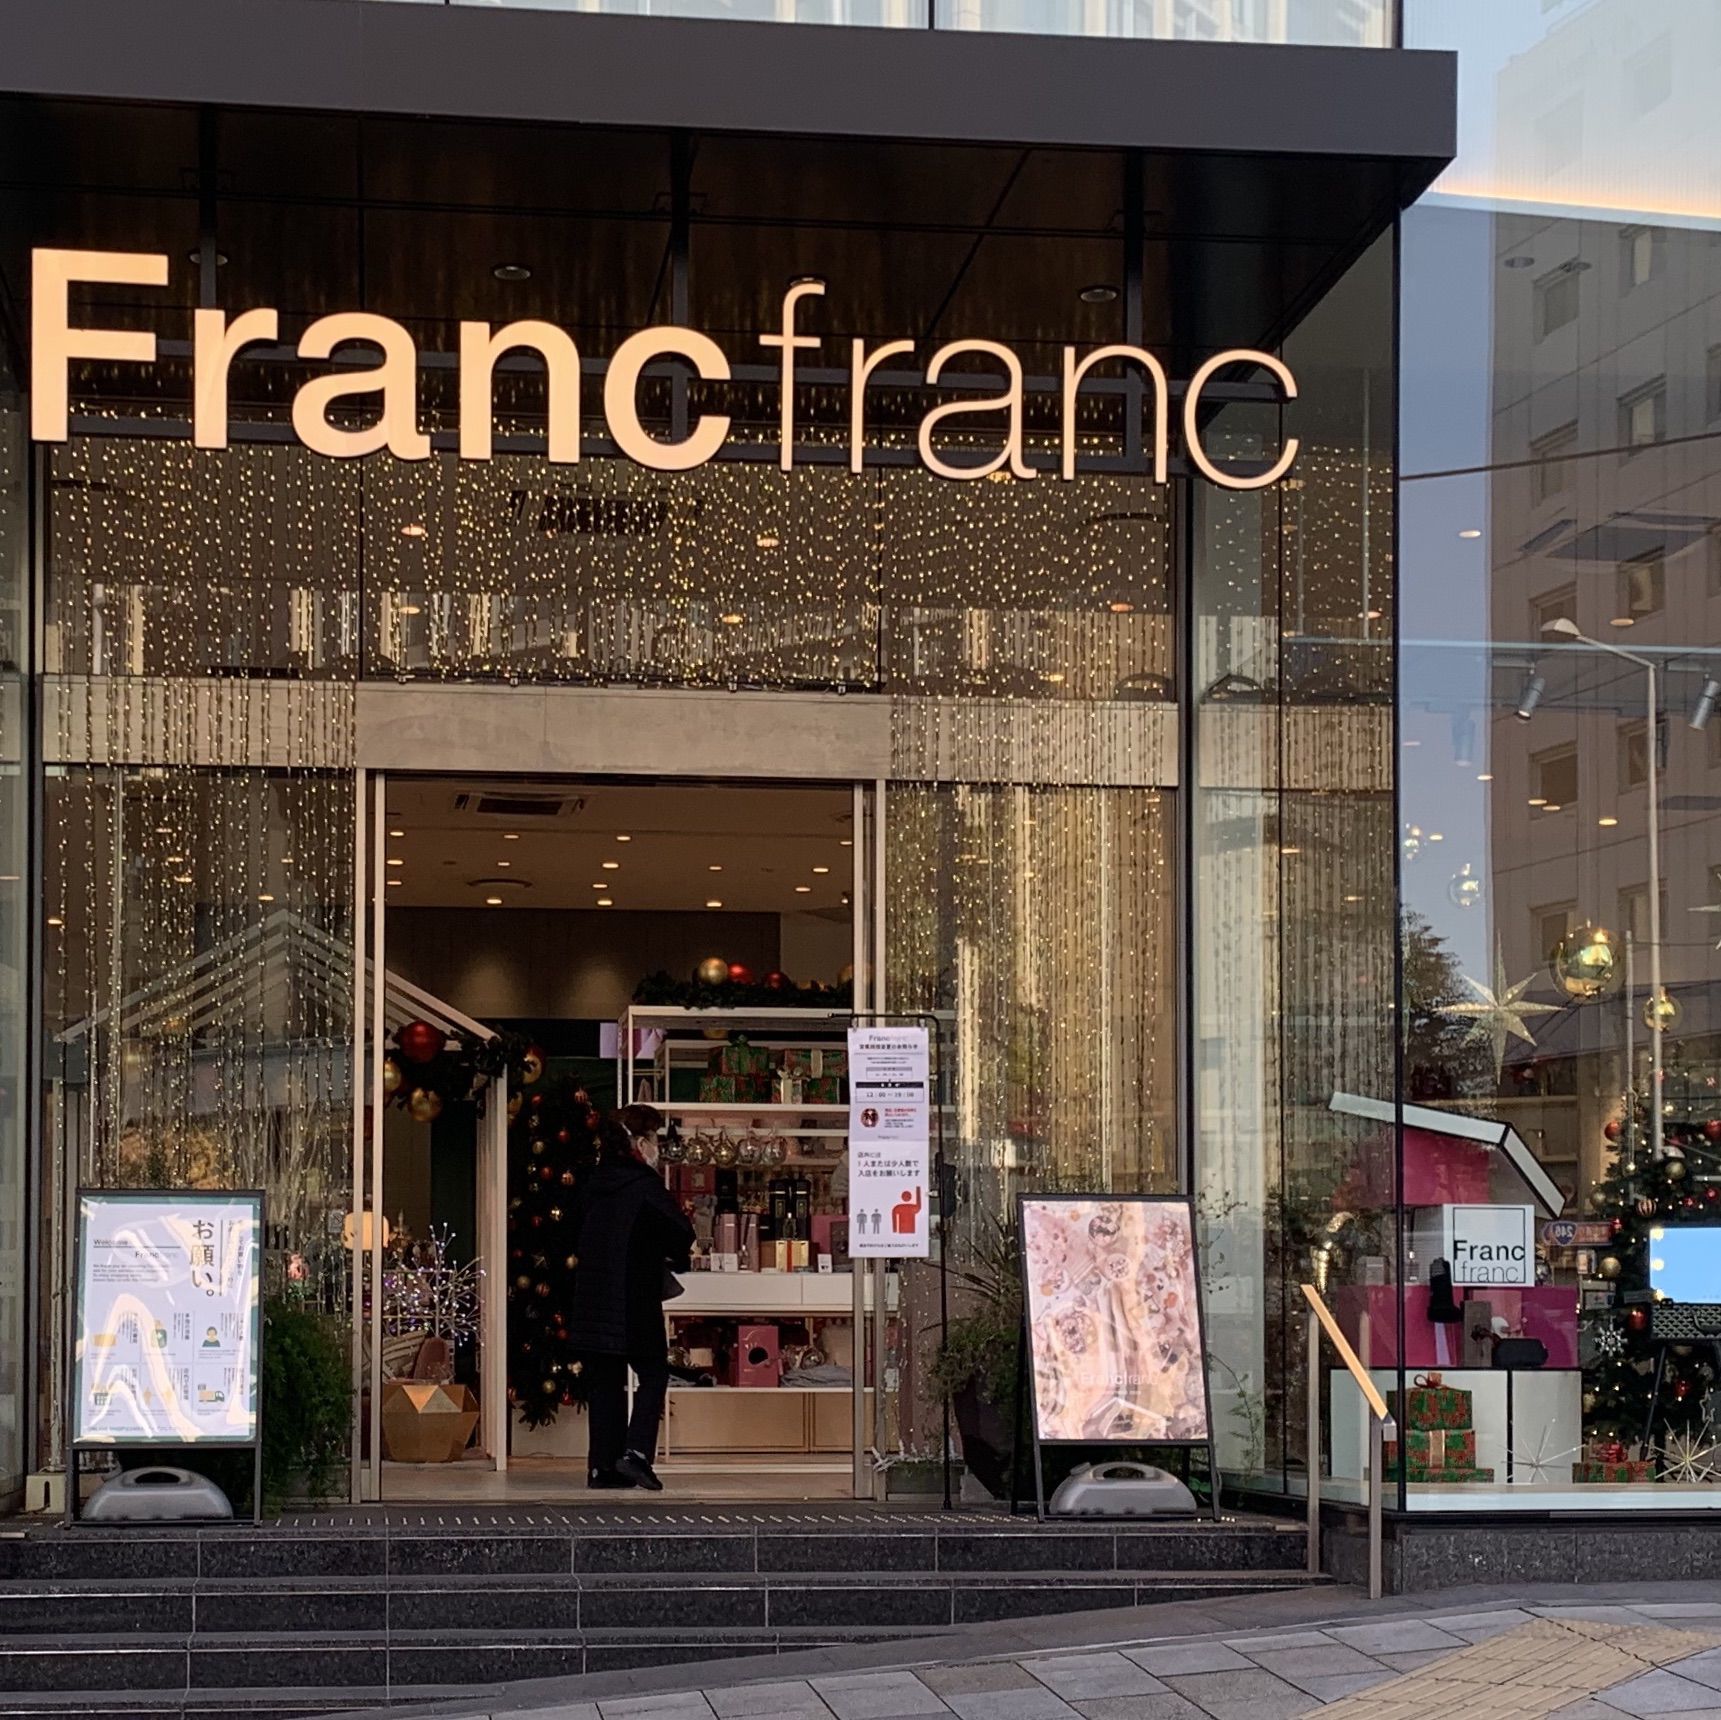 Francfranc 青山店の口コミ 写真 アクセス Recotrip レコトリップ